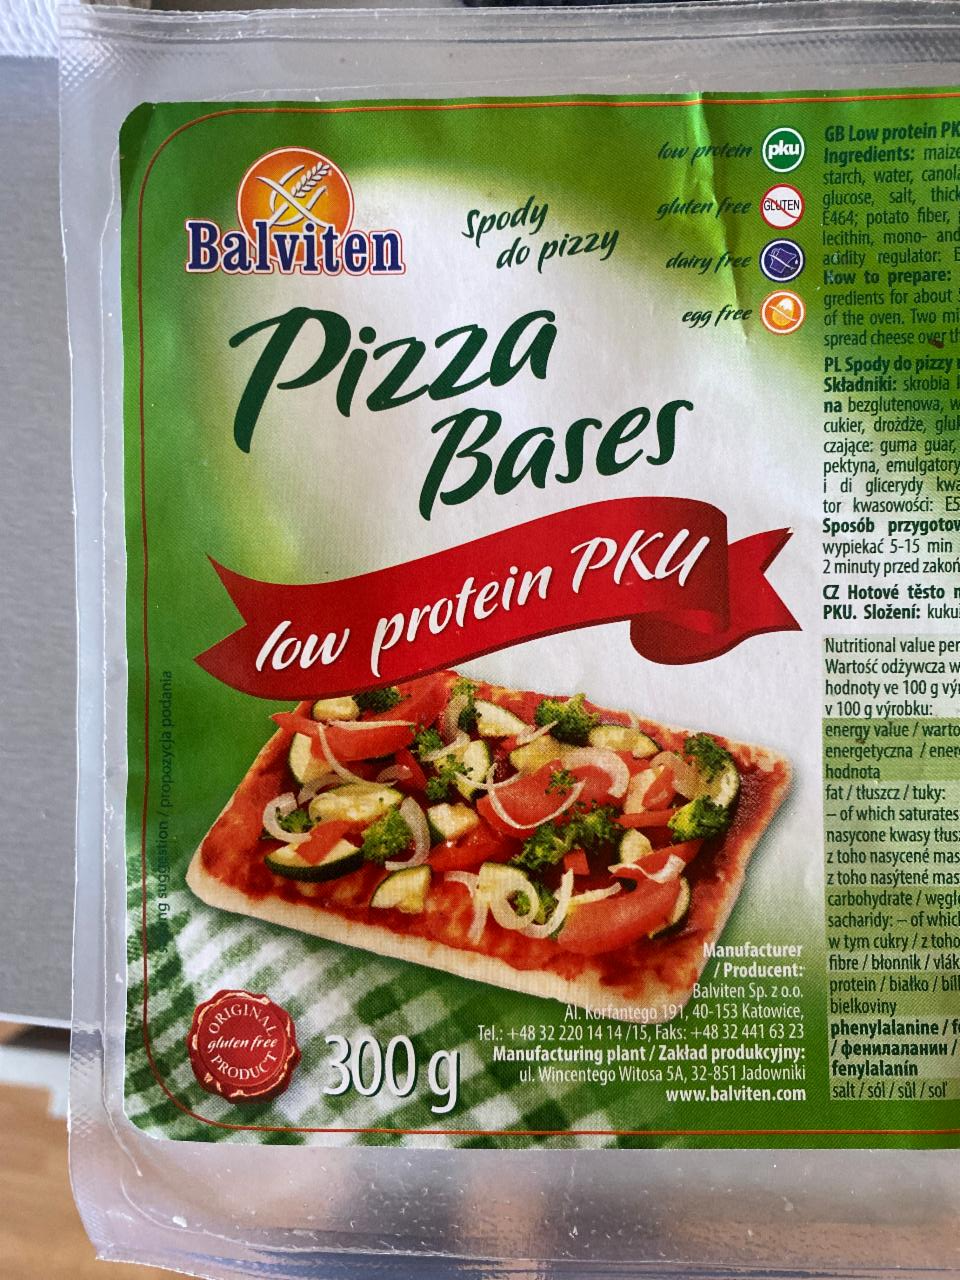 Zdjęcia - Pizza Bases low protein PKU Balviten